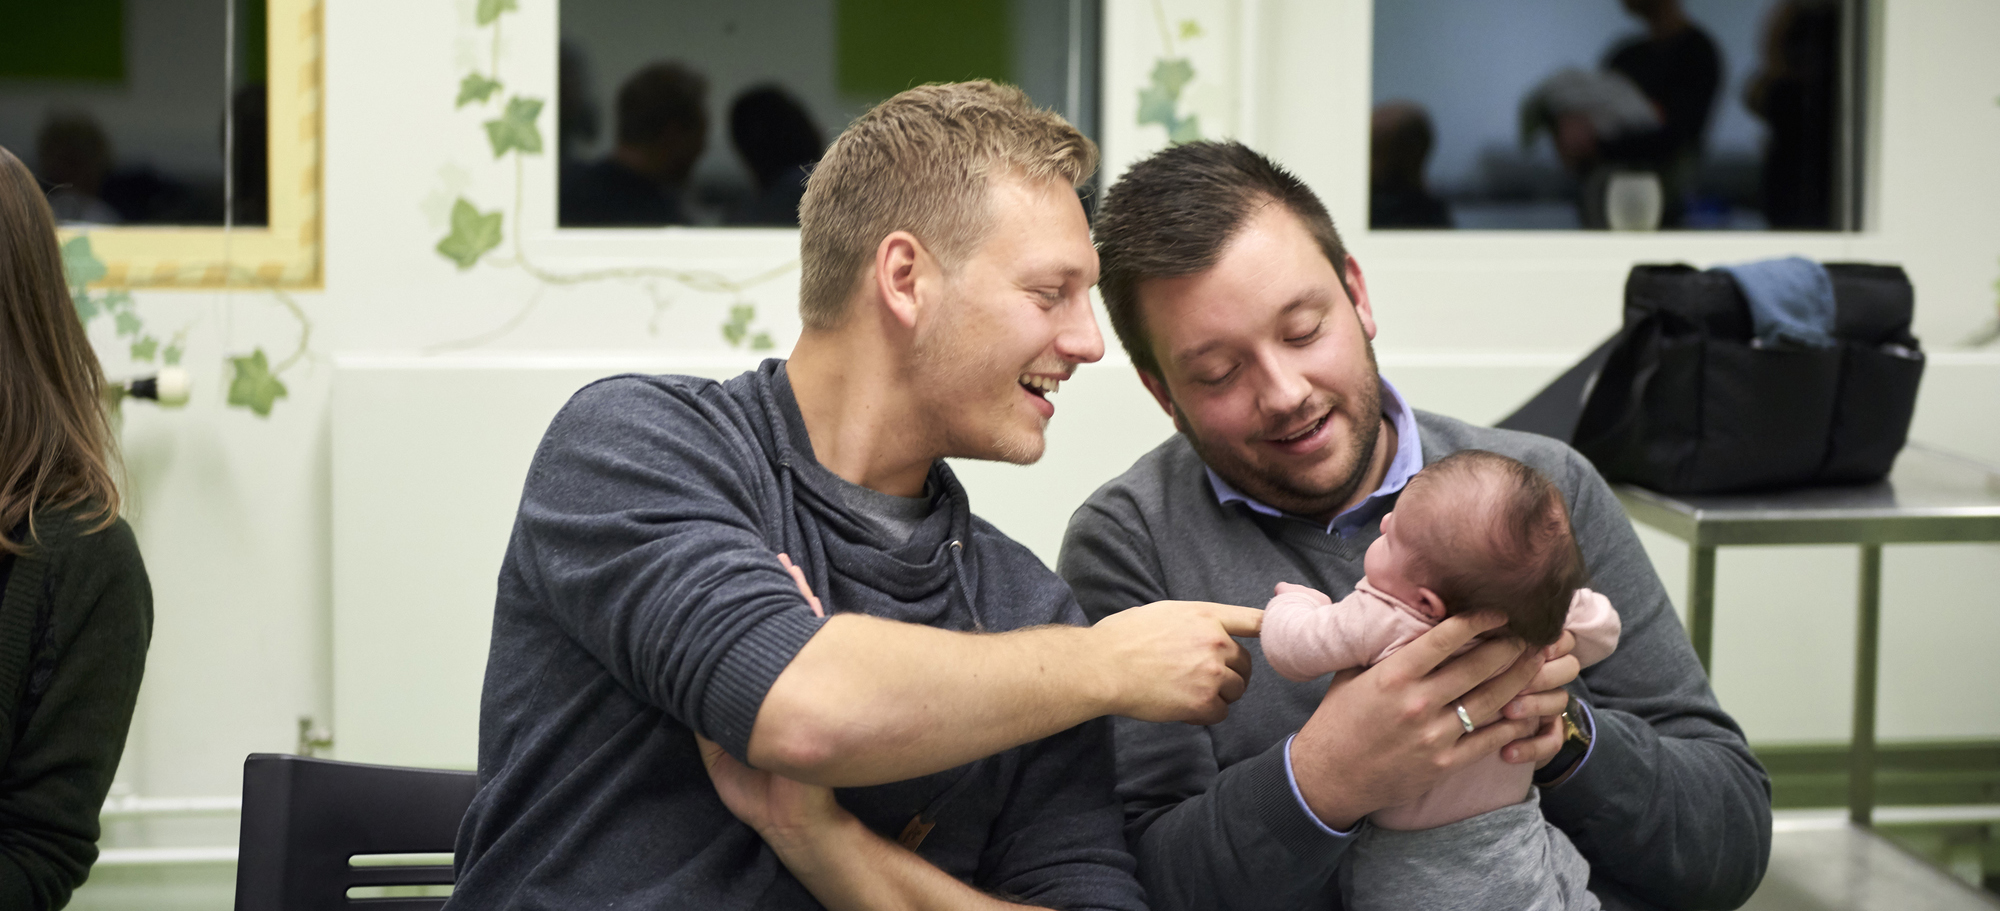 Far er gået på barsel: Sådan bruger vi erfaring til at skabe nye projekter – og hjælpe nye fædre